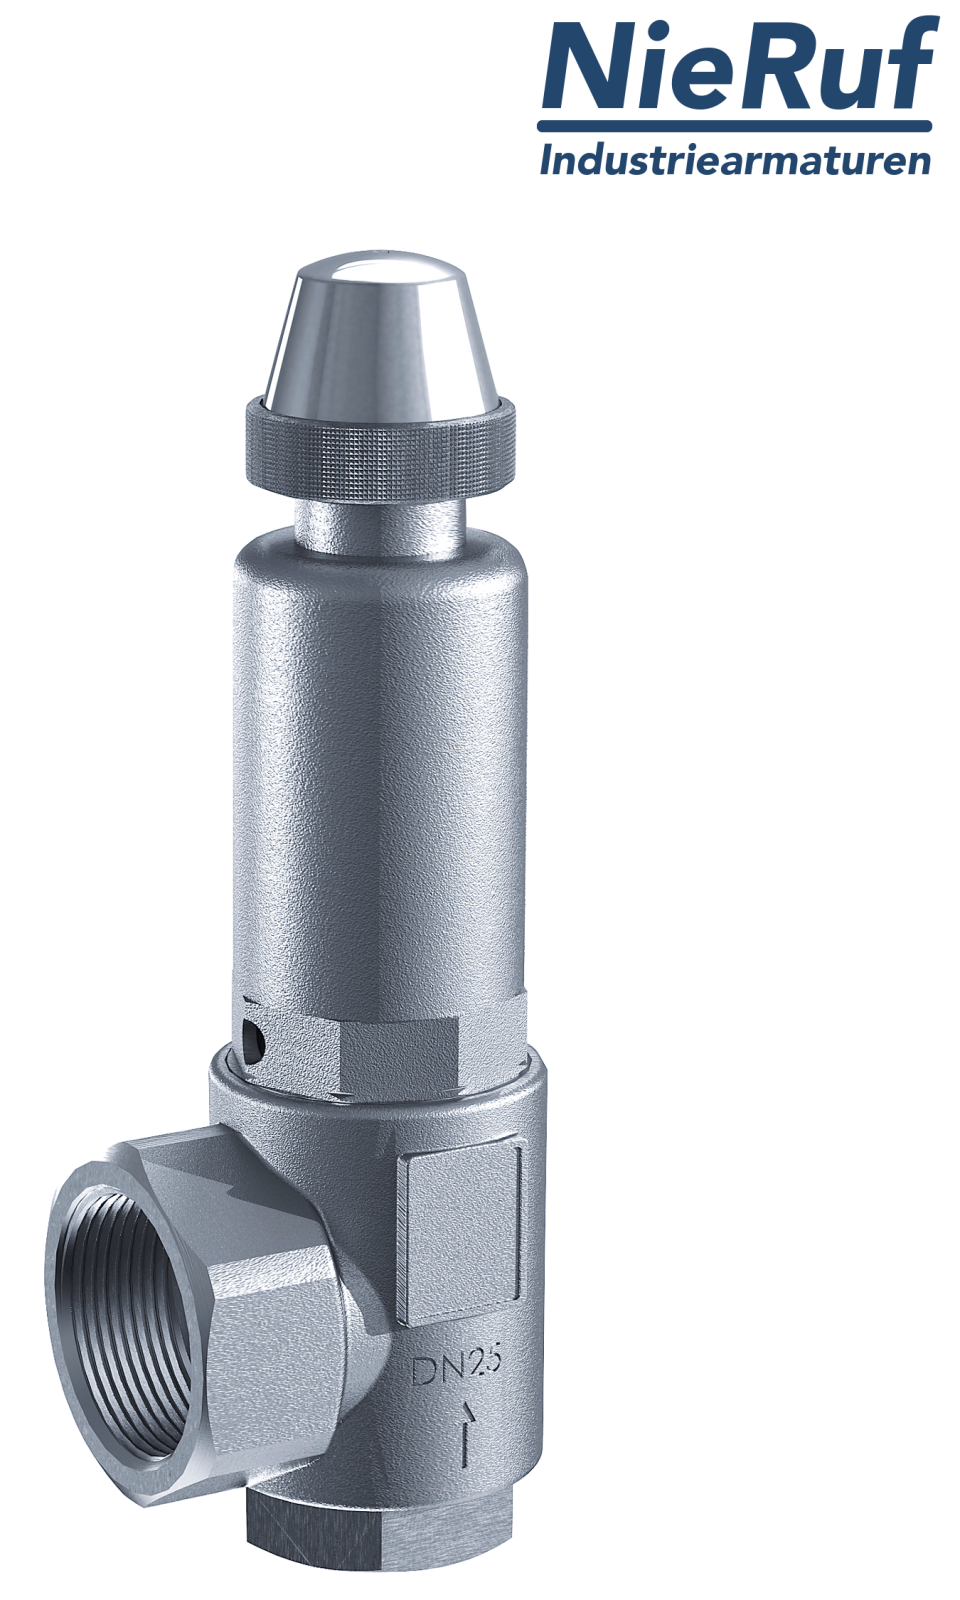 safety valve 3/4" x 1 1/4" fm SV05 neutral liquid media, stainless steel FKM